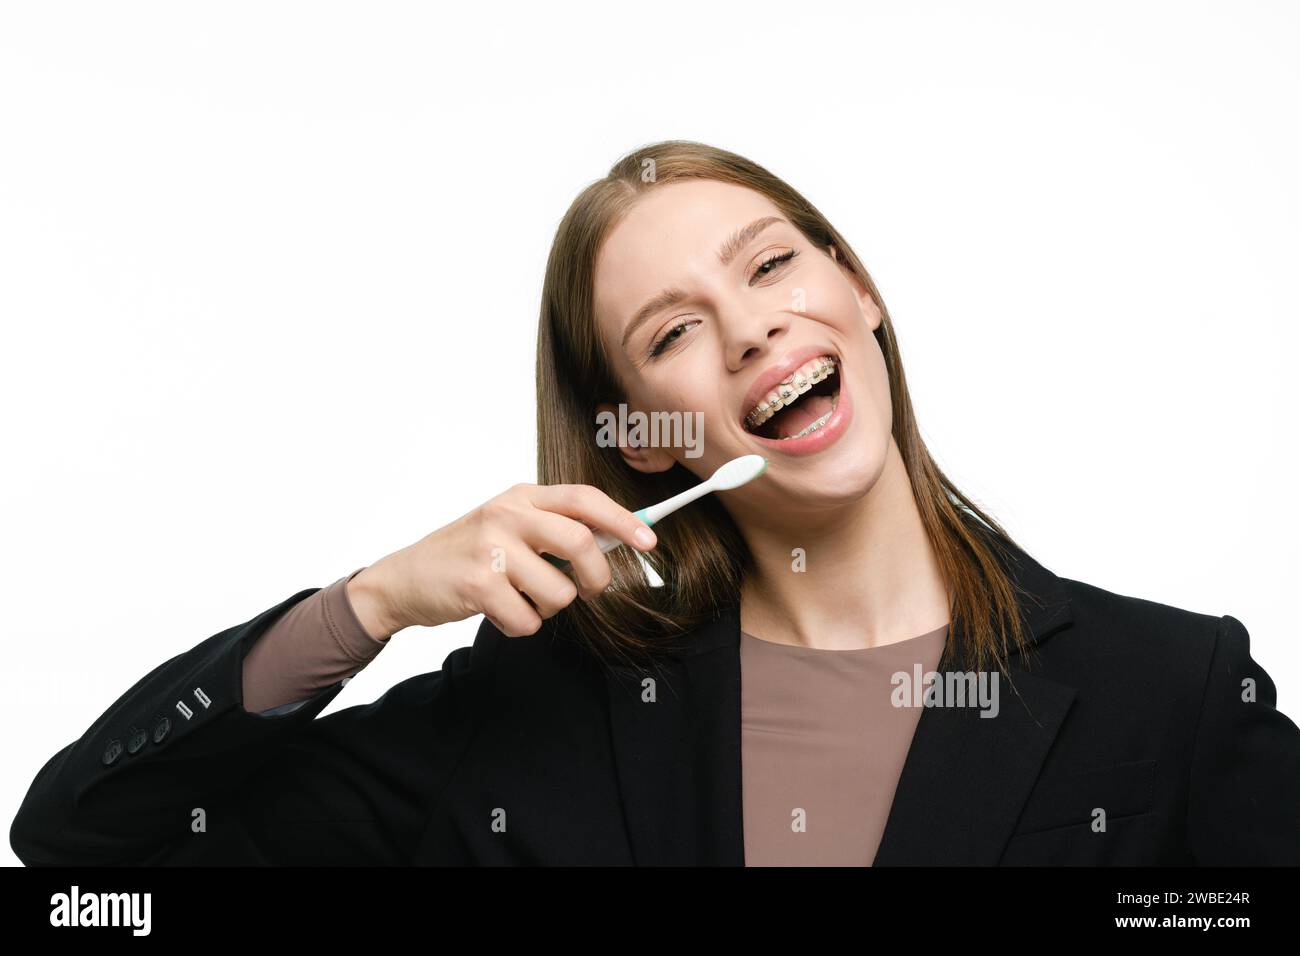 La ragazza sorride molto, tenendo in mano uno spazzolino da denti e mostrando bellissimi denti dritti con l'apparecchio. Foto Stock